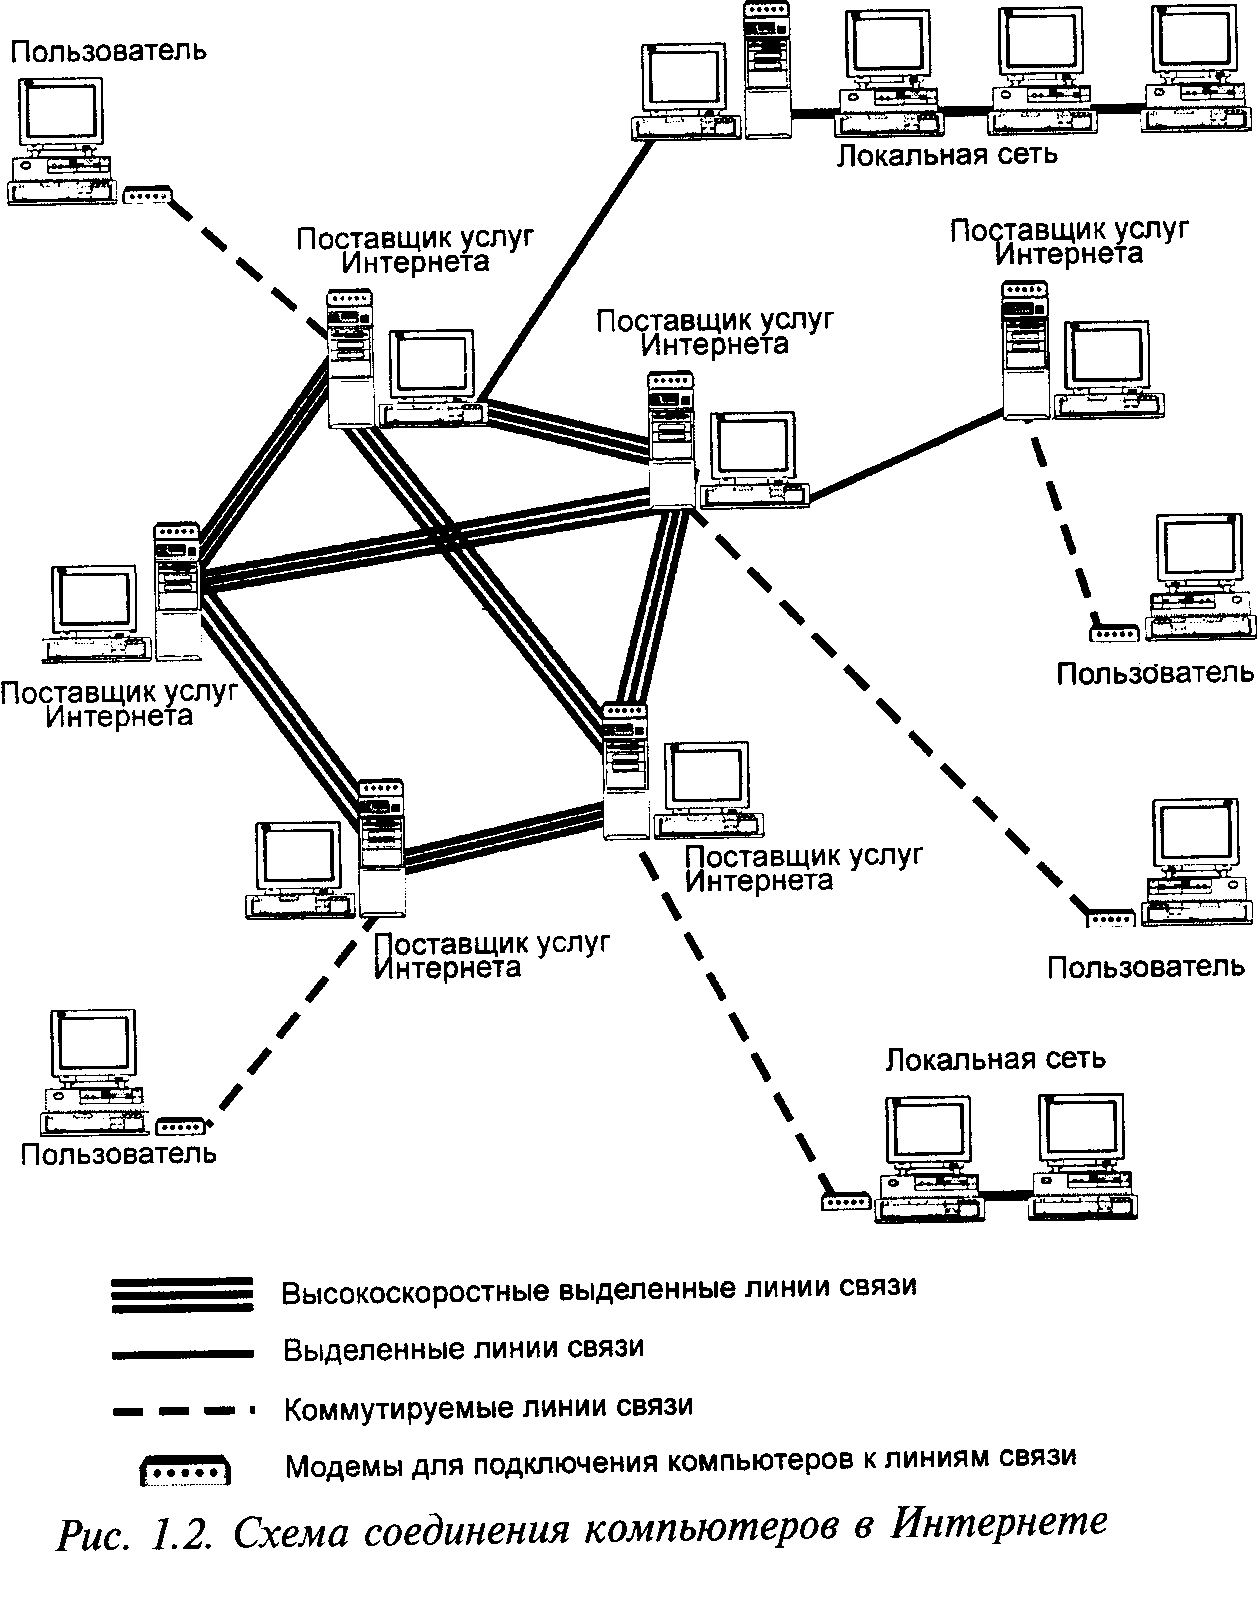 Компьютерная сеть компании